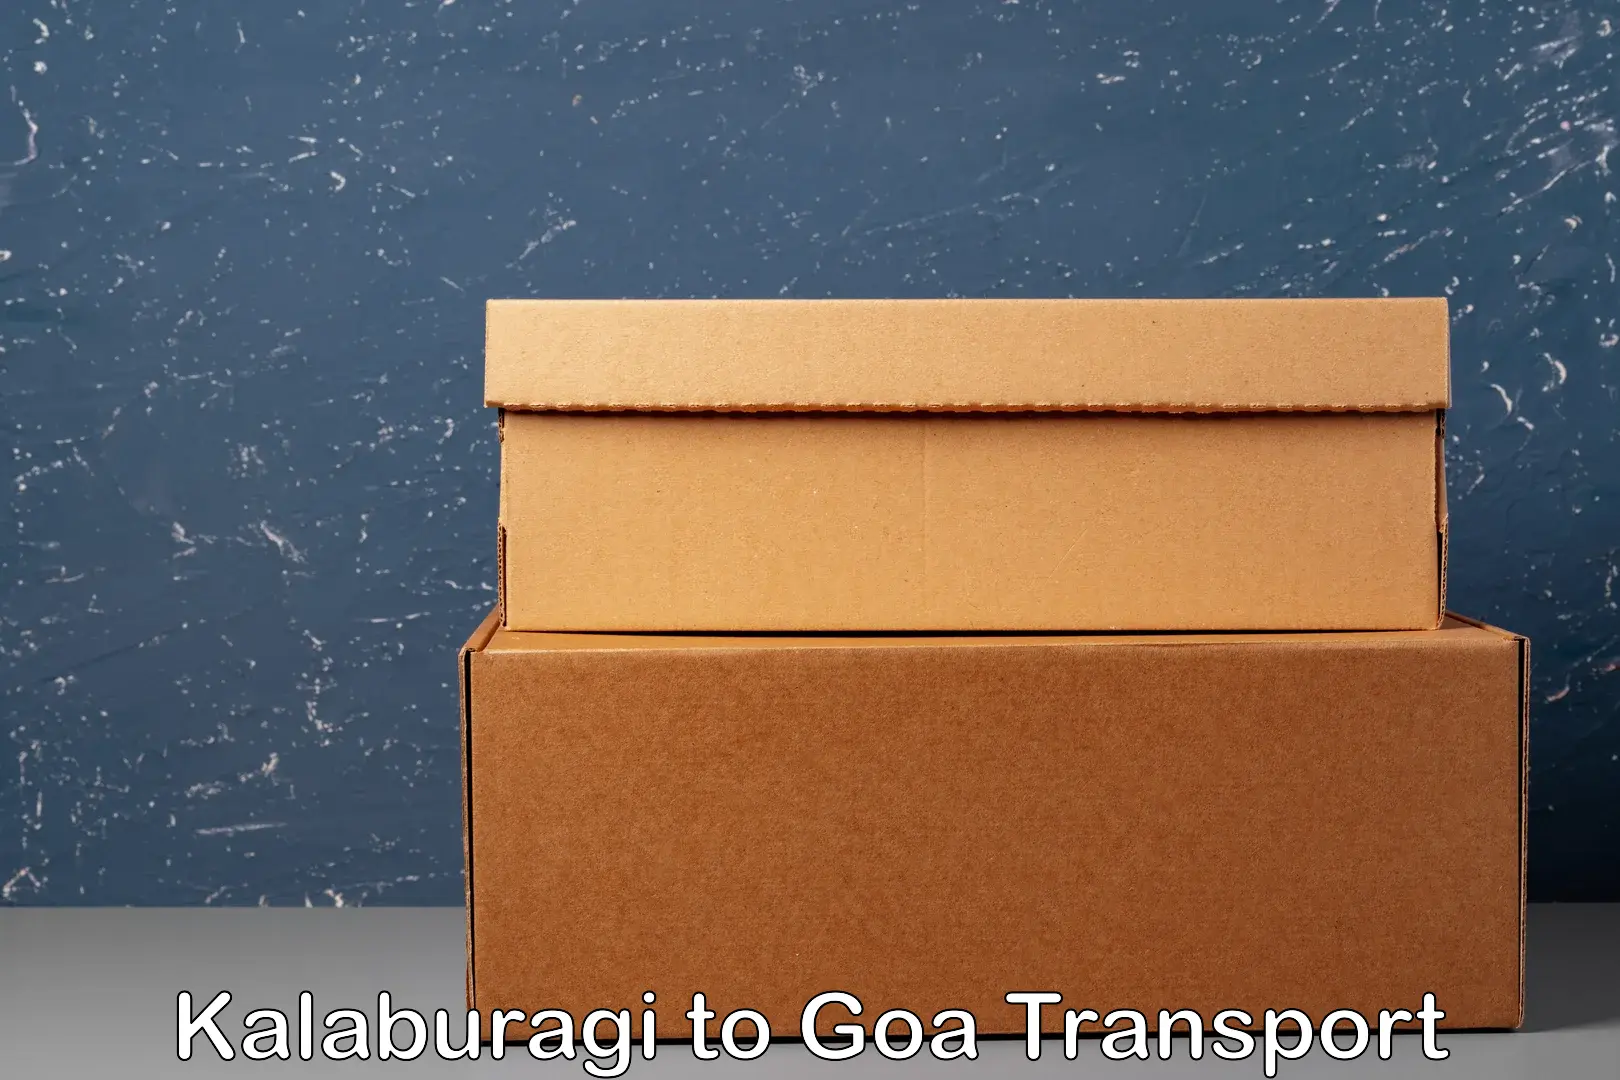 Shipping services Kalaburagi to Goa University